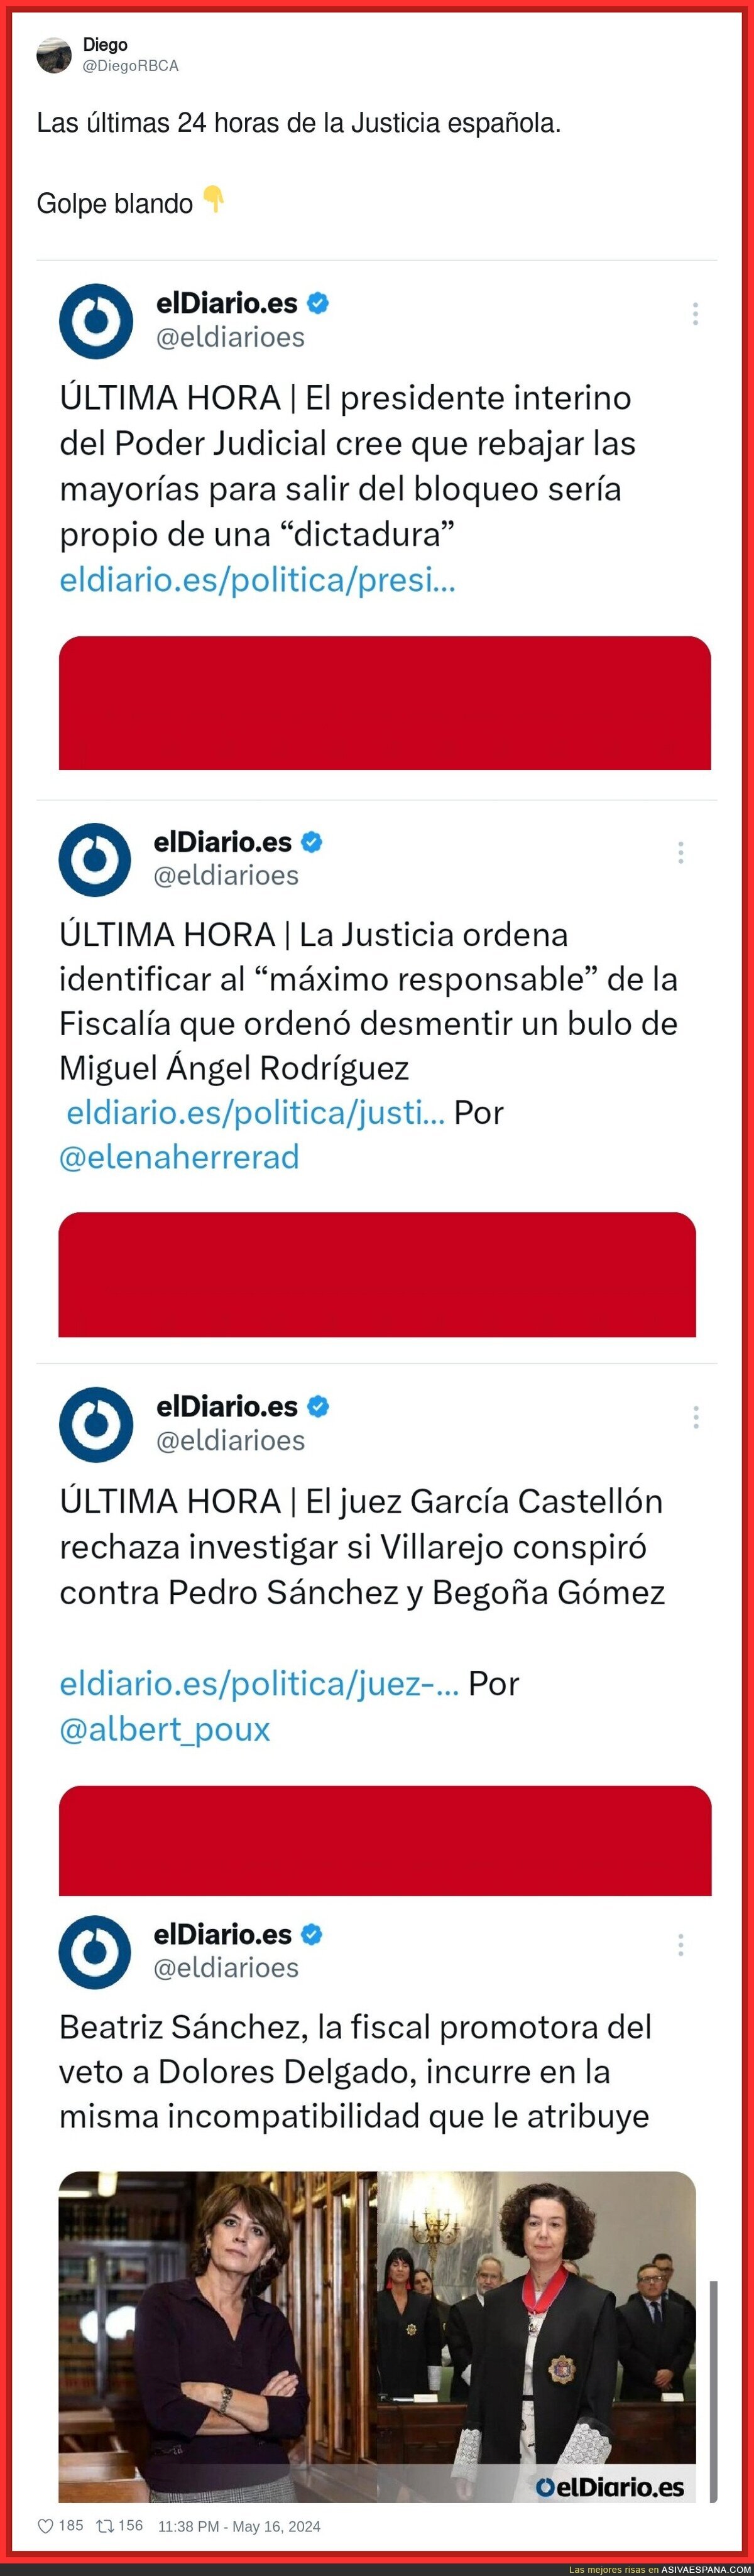 Las últimas 24 horas de la Justicia española